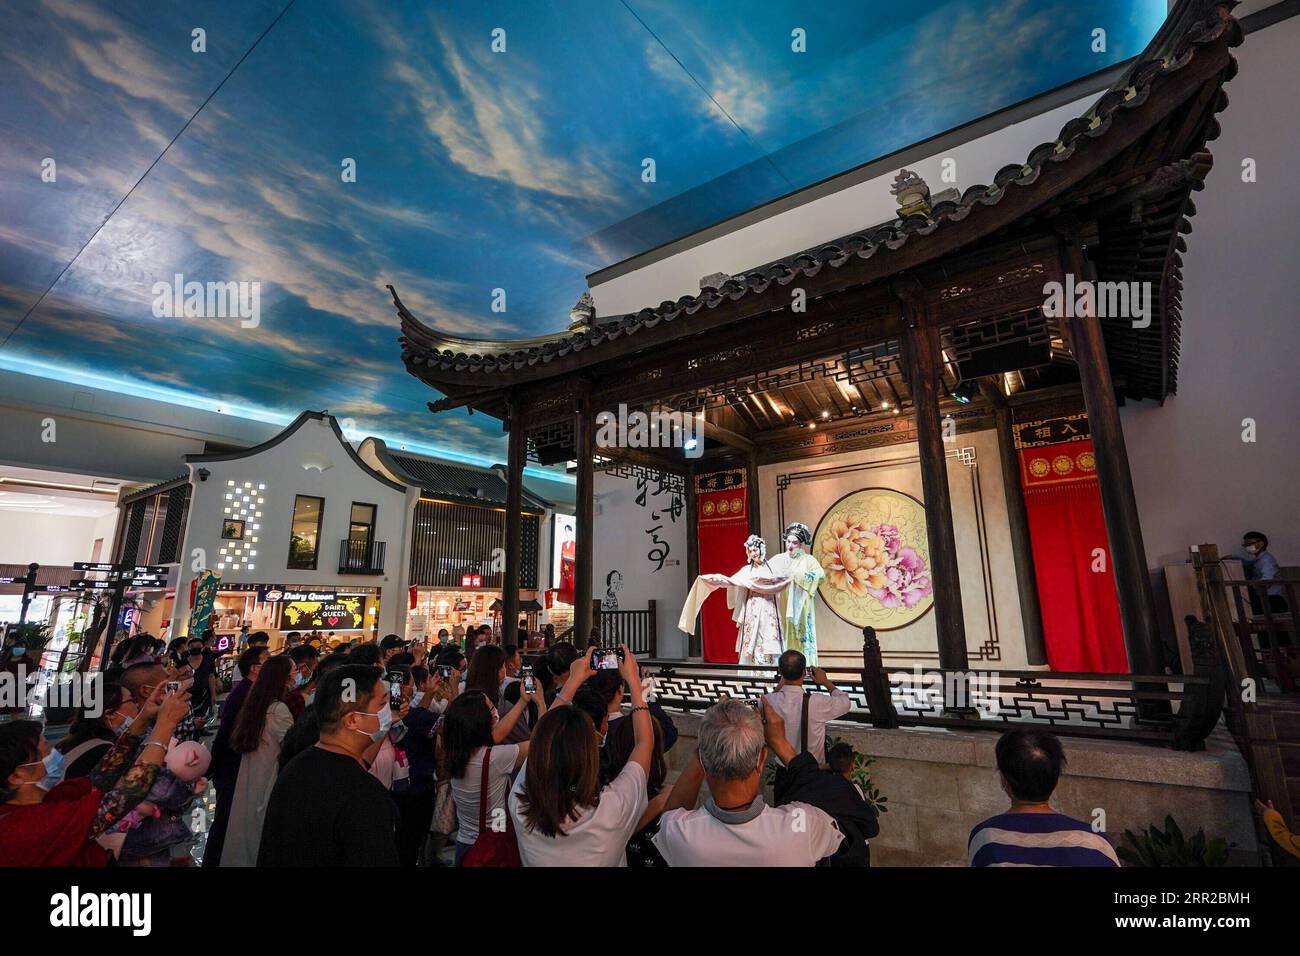 201008 -- SUZHOU, 8 octobre 2020 -- les voyageurs regardent l'opéra Kunqu dans la zone de service de l'autoroute Yangchenghu le long de l'autoroute Shanghai-Nanjing à Suzhou, dans la province du Jiangsu de l'est de la Chine, le 8 octobre 2020. En s'inspirant des peintures à l'encre de Wu Guanzhong, un peintre chinois contemporain de premier plan, la zone de service a restauré l'attrait esthétique et le charme historique des villes riveraines de la région du delta du fleuve Yangtze avec ses dessins de paysages aquatiques, ses arches arrondies, ainsi que ses murs blancs et ses carreaux noirs. Jiangsu a commencé à moderniser ses zones de service routier en 2016 et en a construit plusieurs Banque D'Images